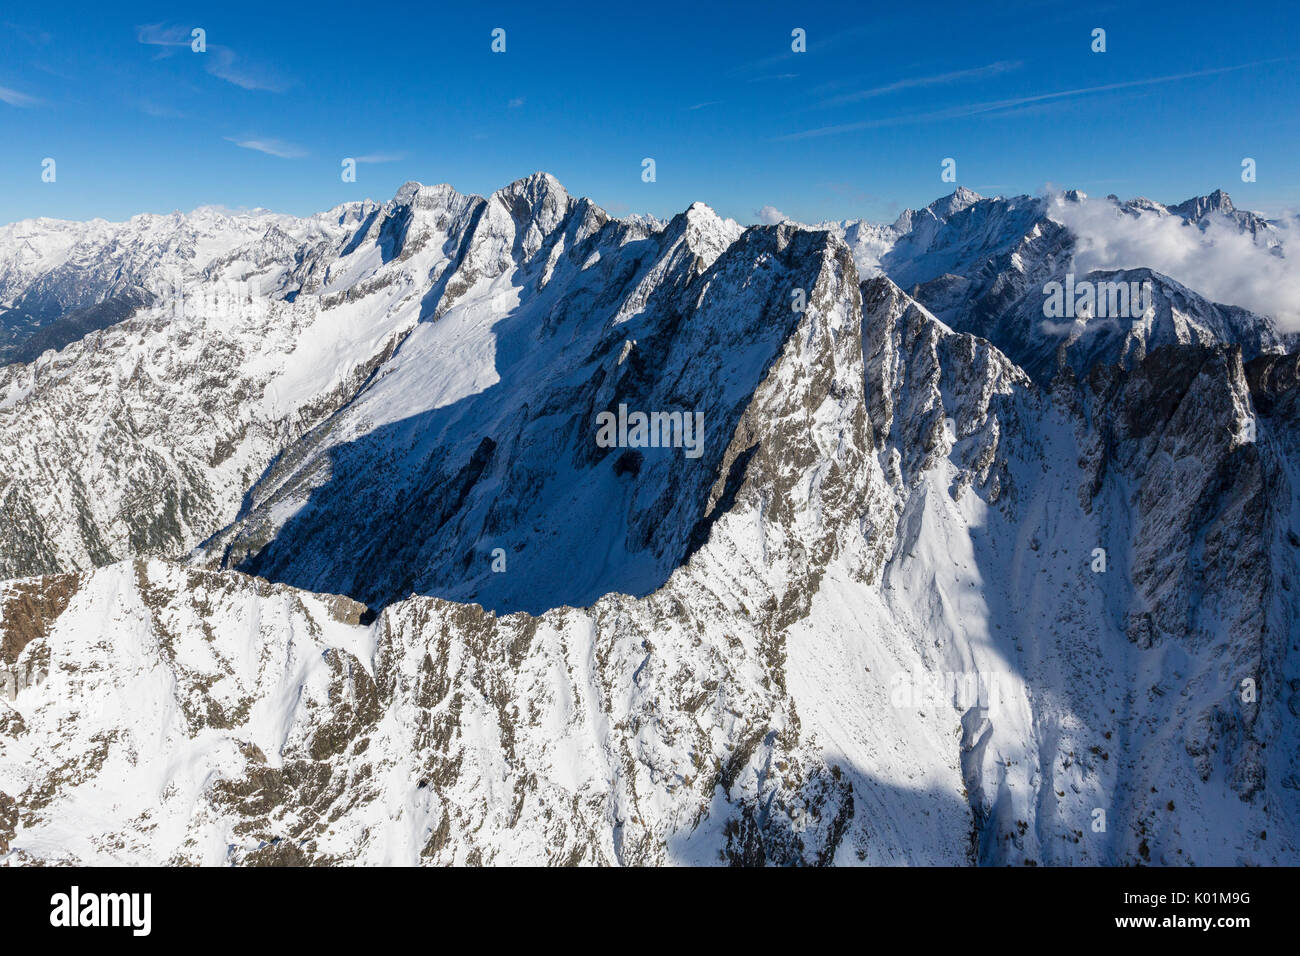 Vue aérienne de l'sommets enneigés et les crêtes dans une journée ensoleillée d'automne de la vallée de Chiavenna Valtellina Lombardie Italie Europe Banque D'Images